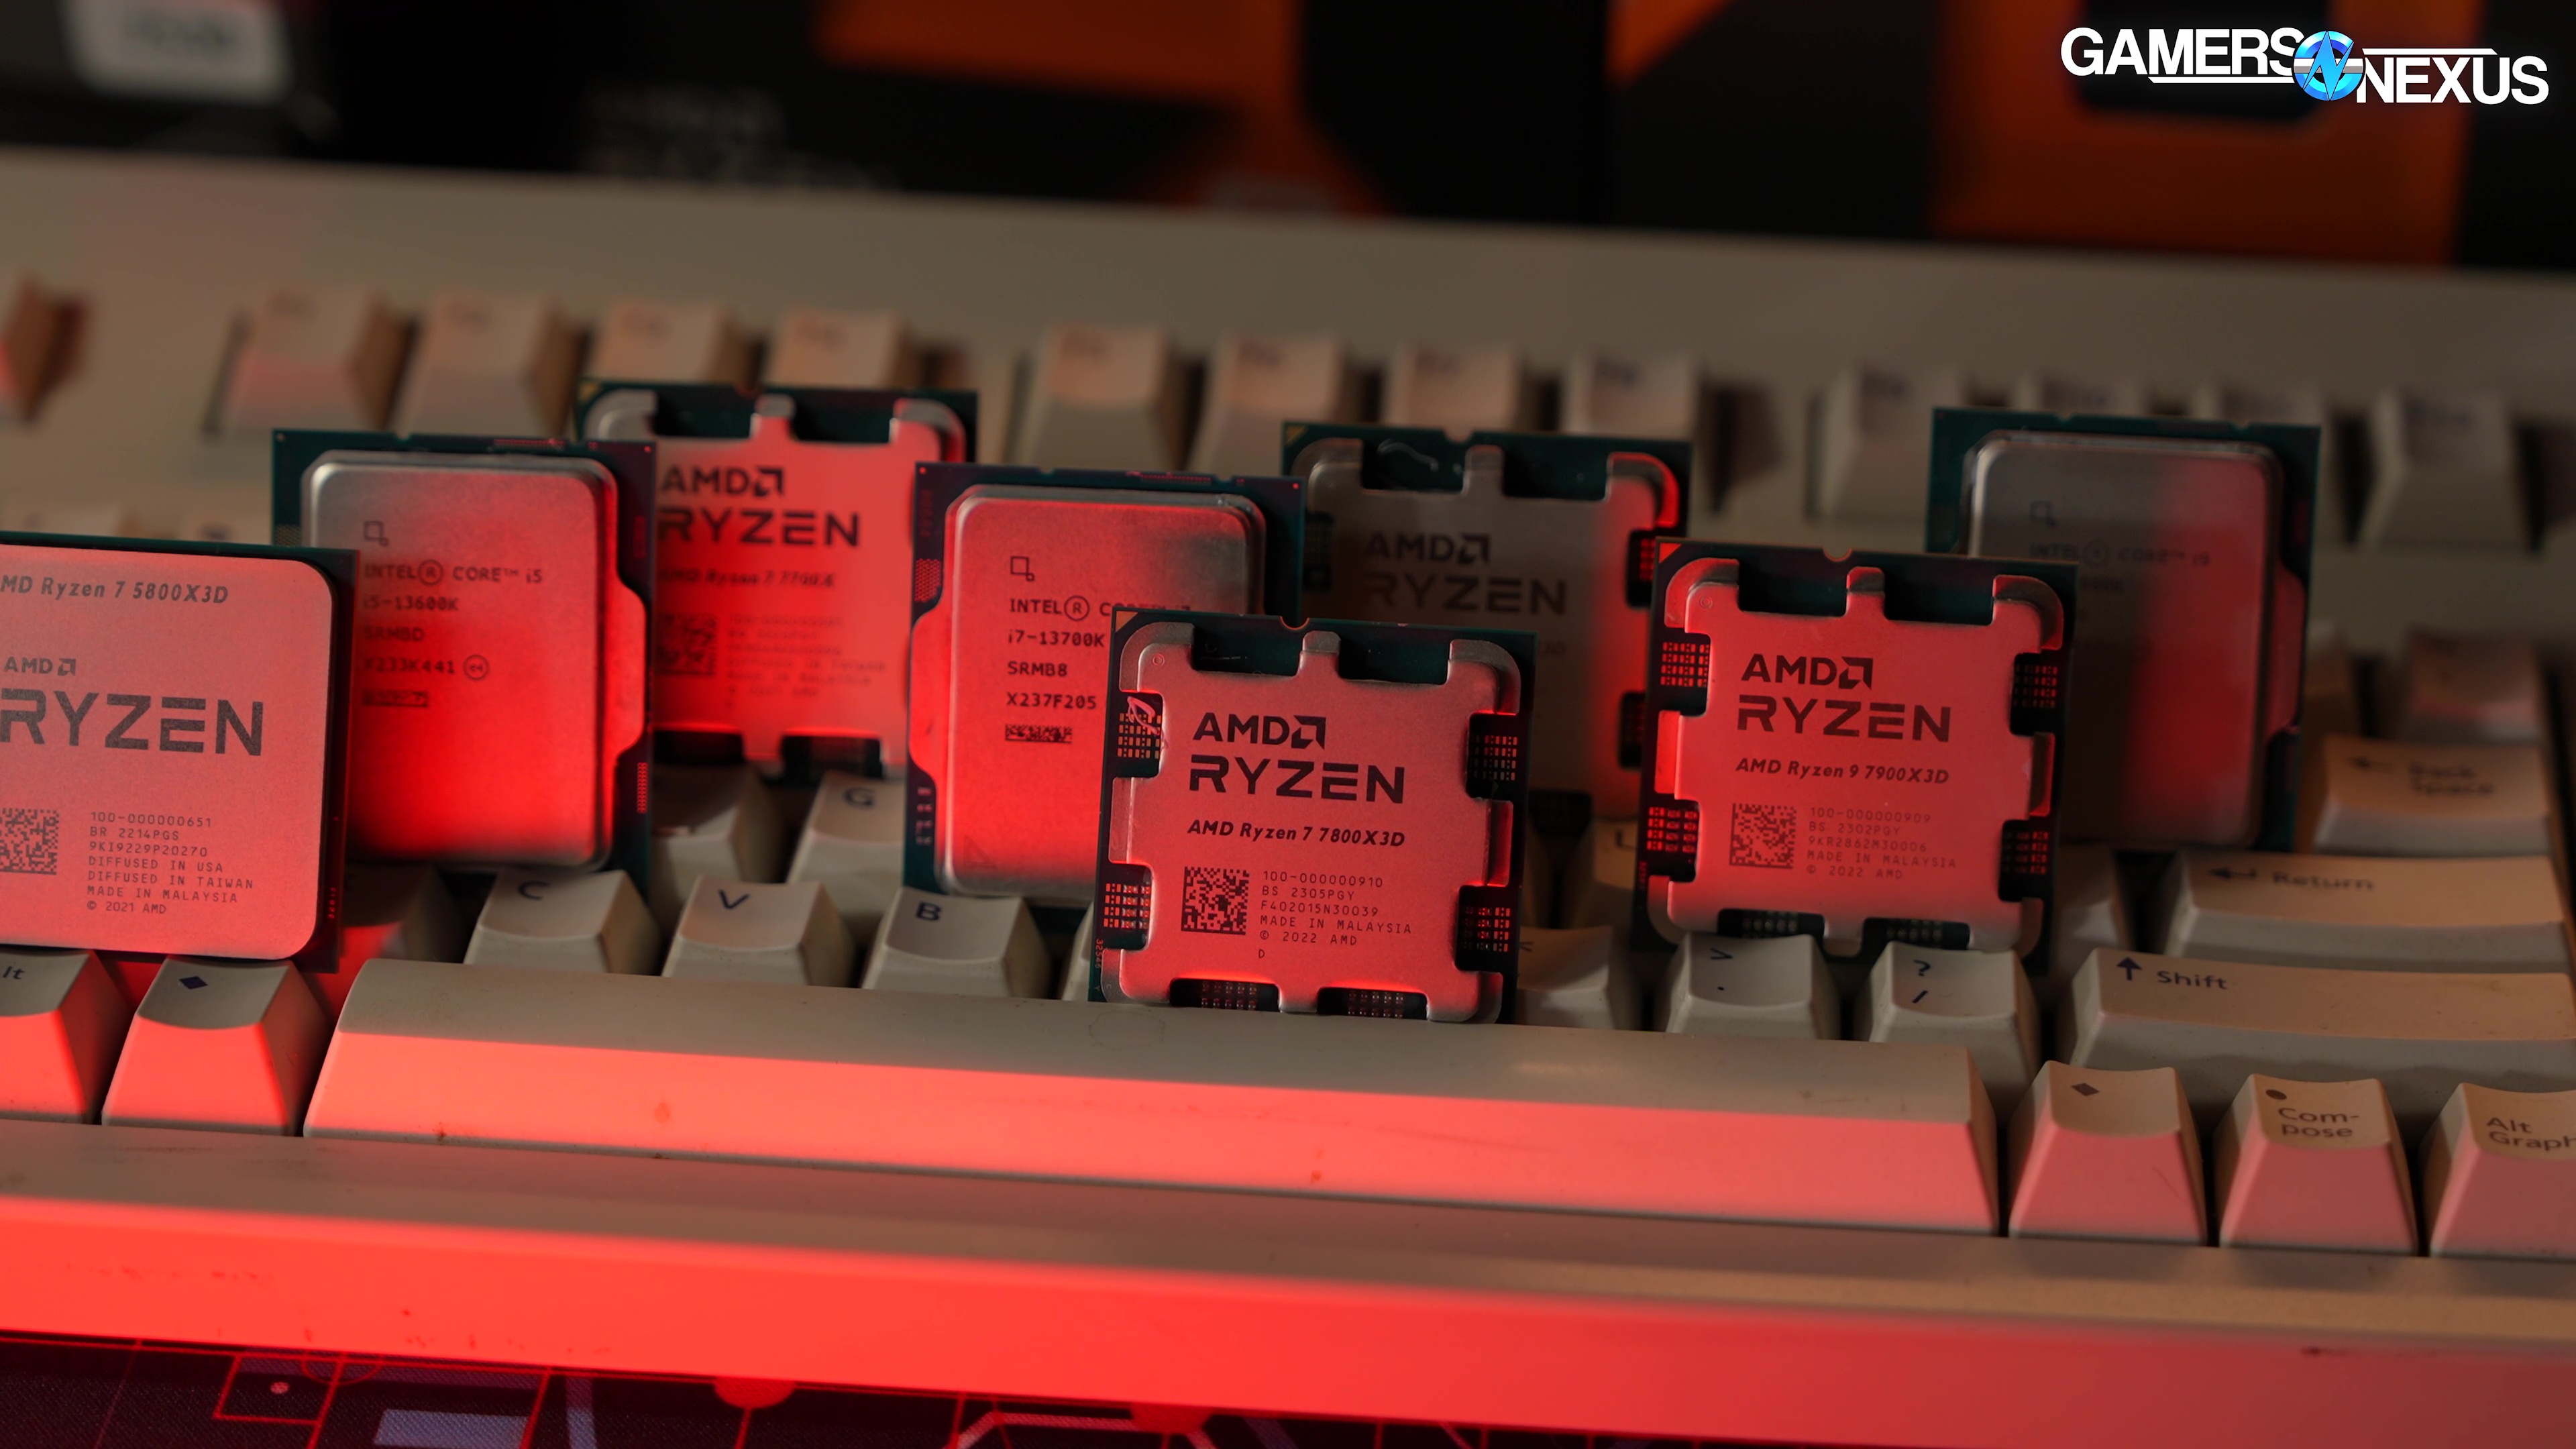 An AMD Ryzen 7 5800X3D Or An AMD Ryzen 7 5800X? - PC Perspective